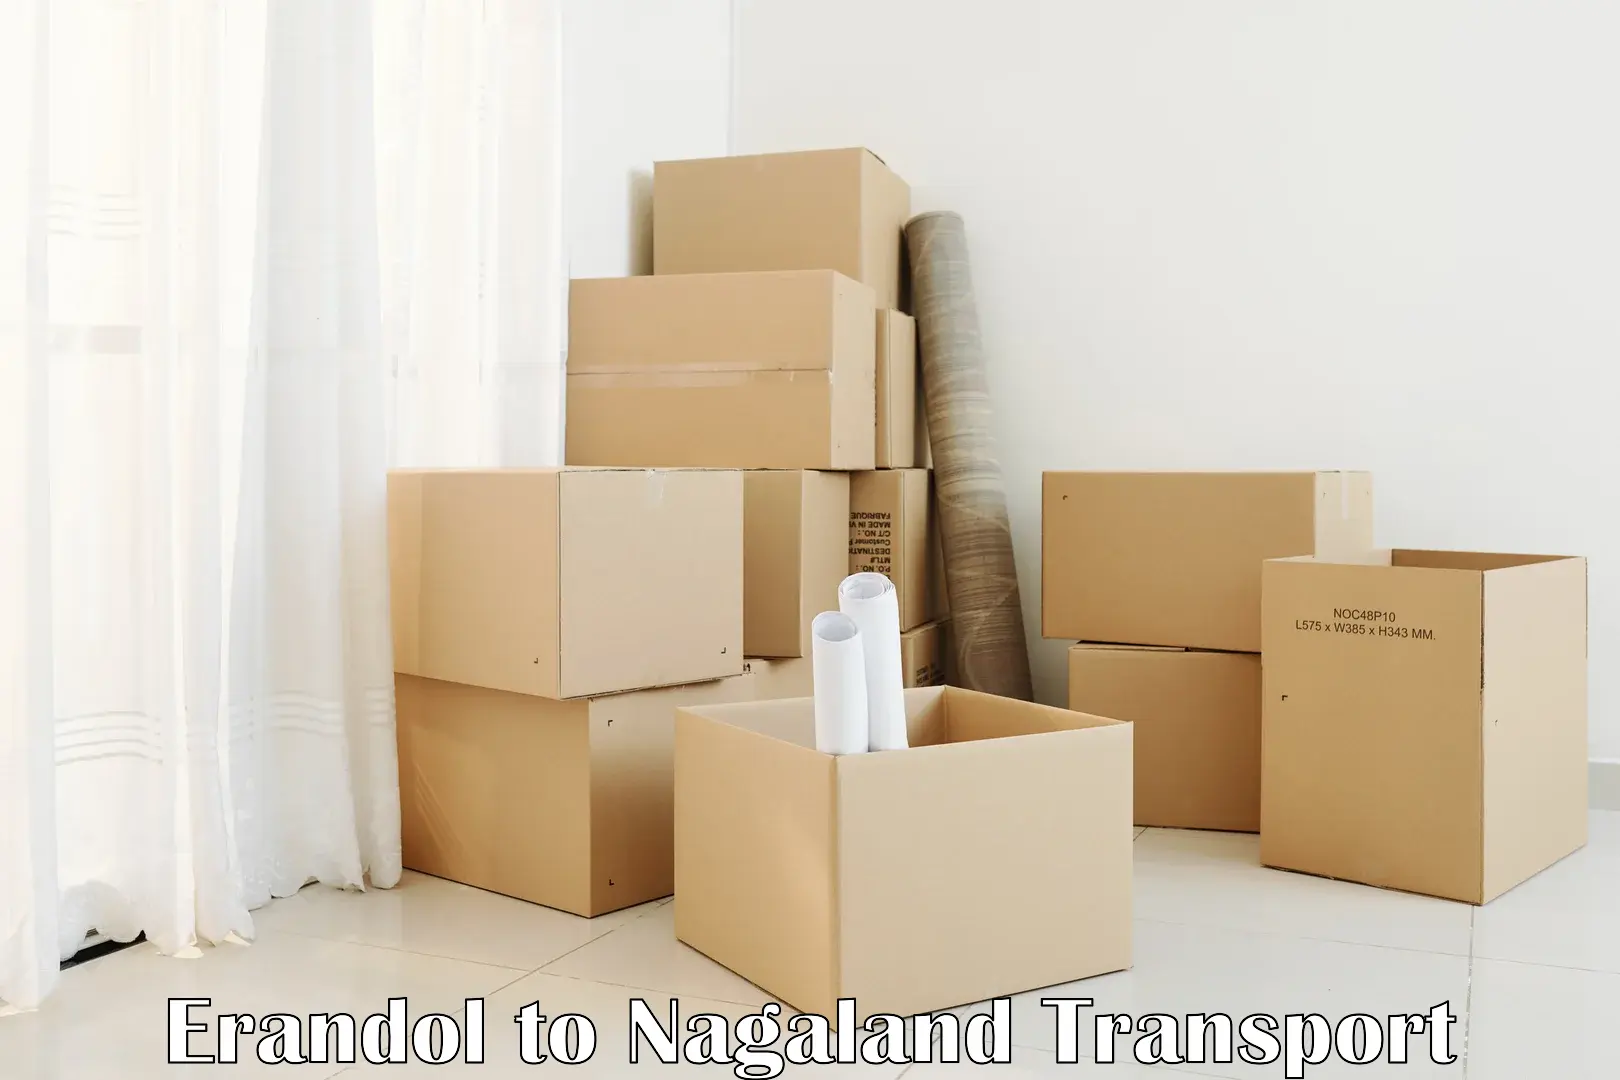 India truck logistics services Erandol to Nagaland